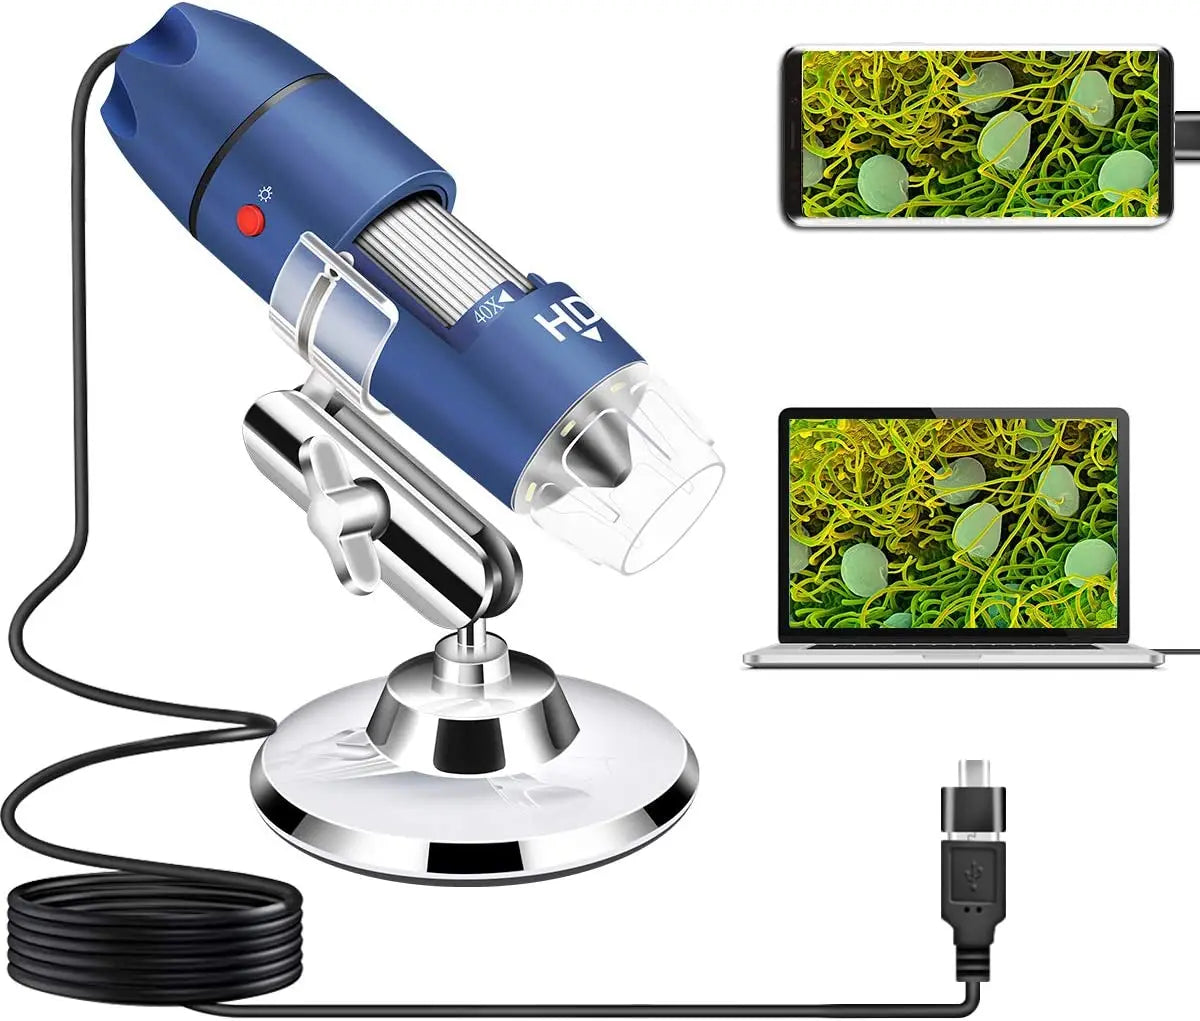 Cainda Microscope numérique HD 2560x1440P 2K USB pour Android Windows 7 8 10 11 Linux Mac, 40X à 1000X Caméra Microscope avec Support et étui de Transport Cainda